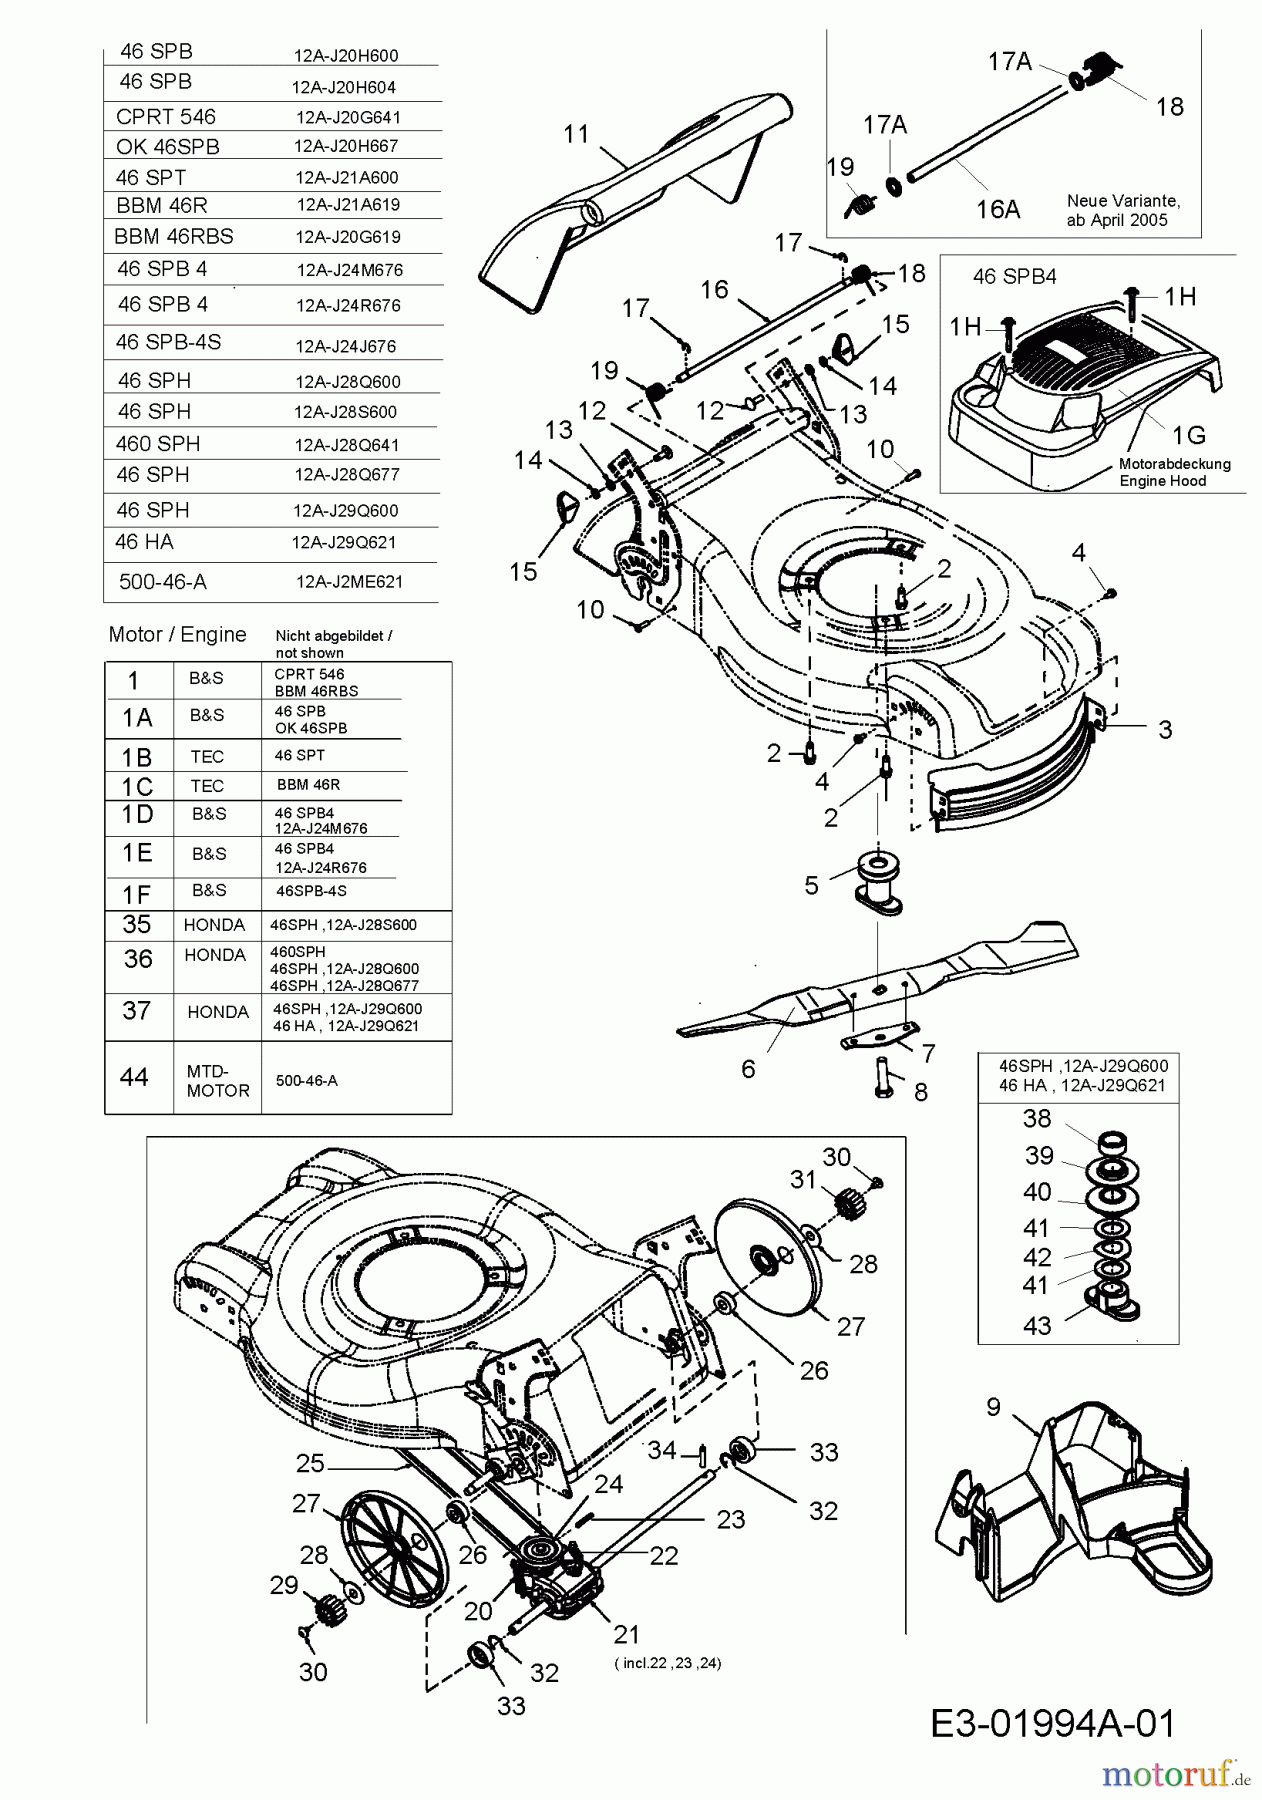  Central Park Motormäher mit Antrieb CPRT 546 12A-J20G641  (2005) Getriebe, Messer, Motor